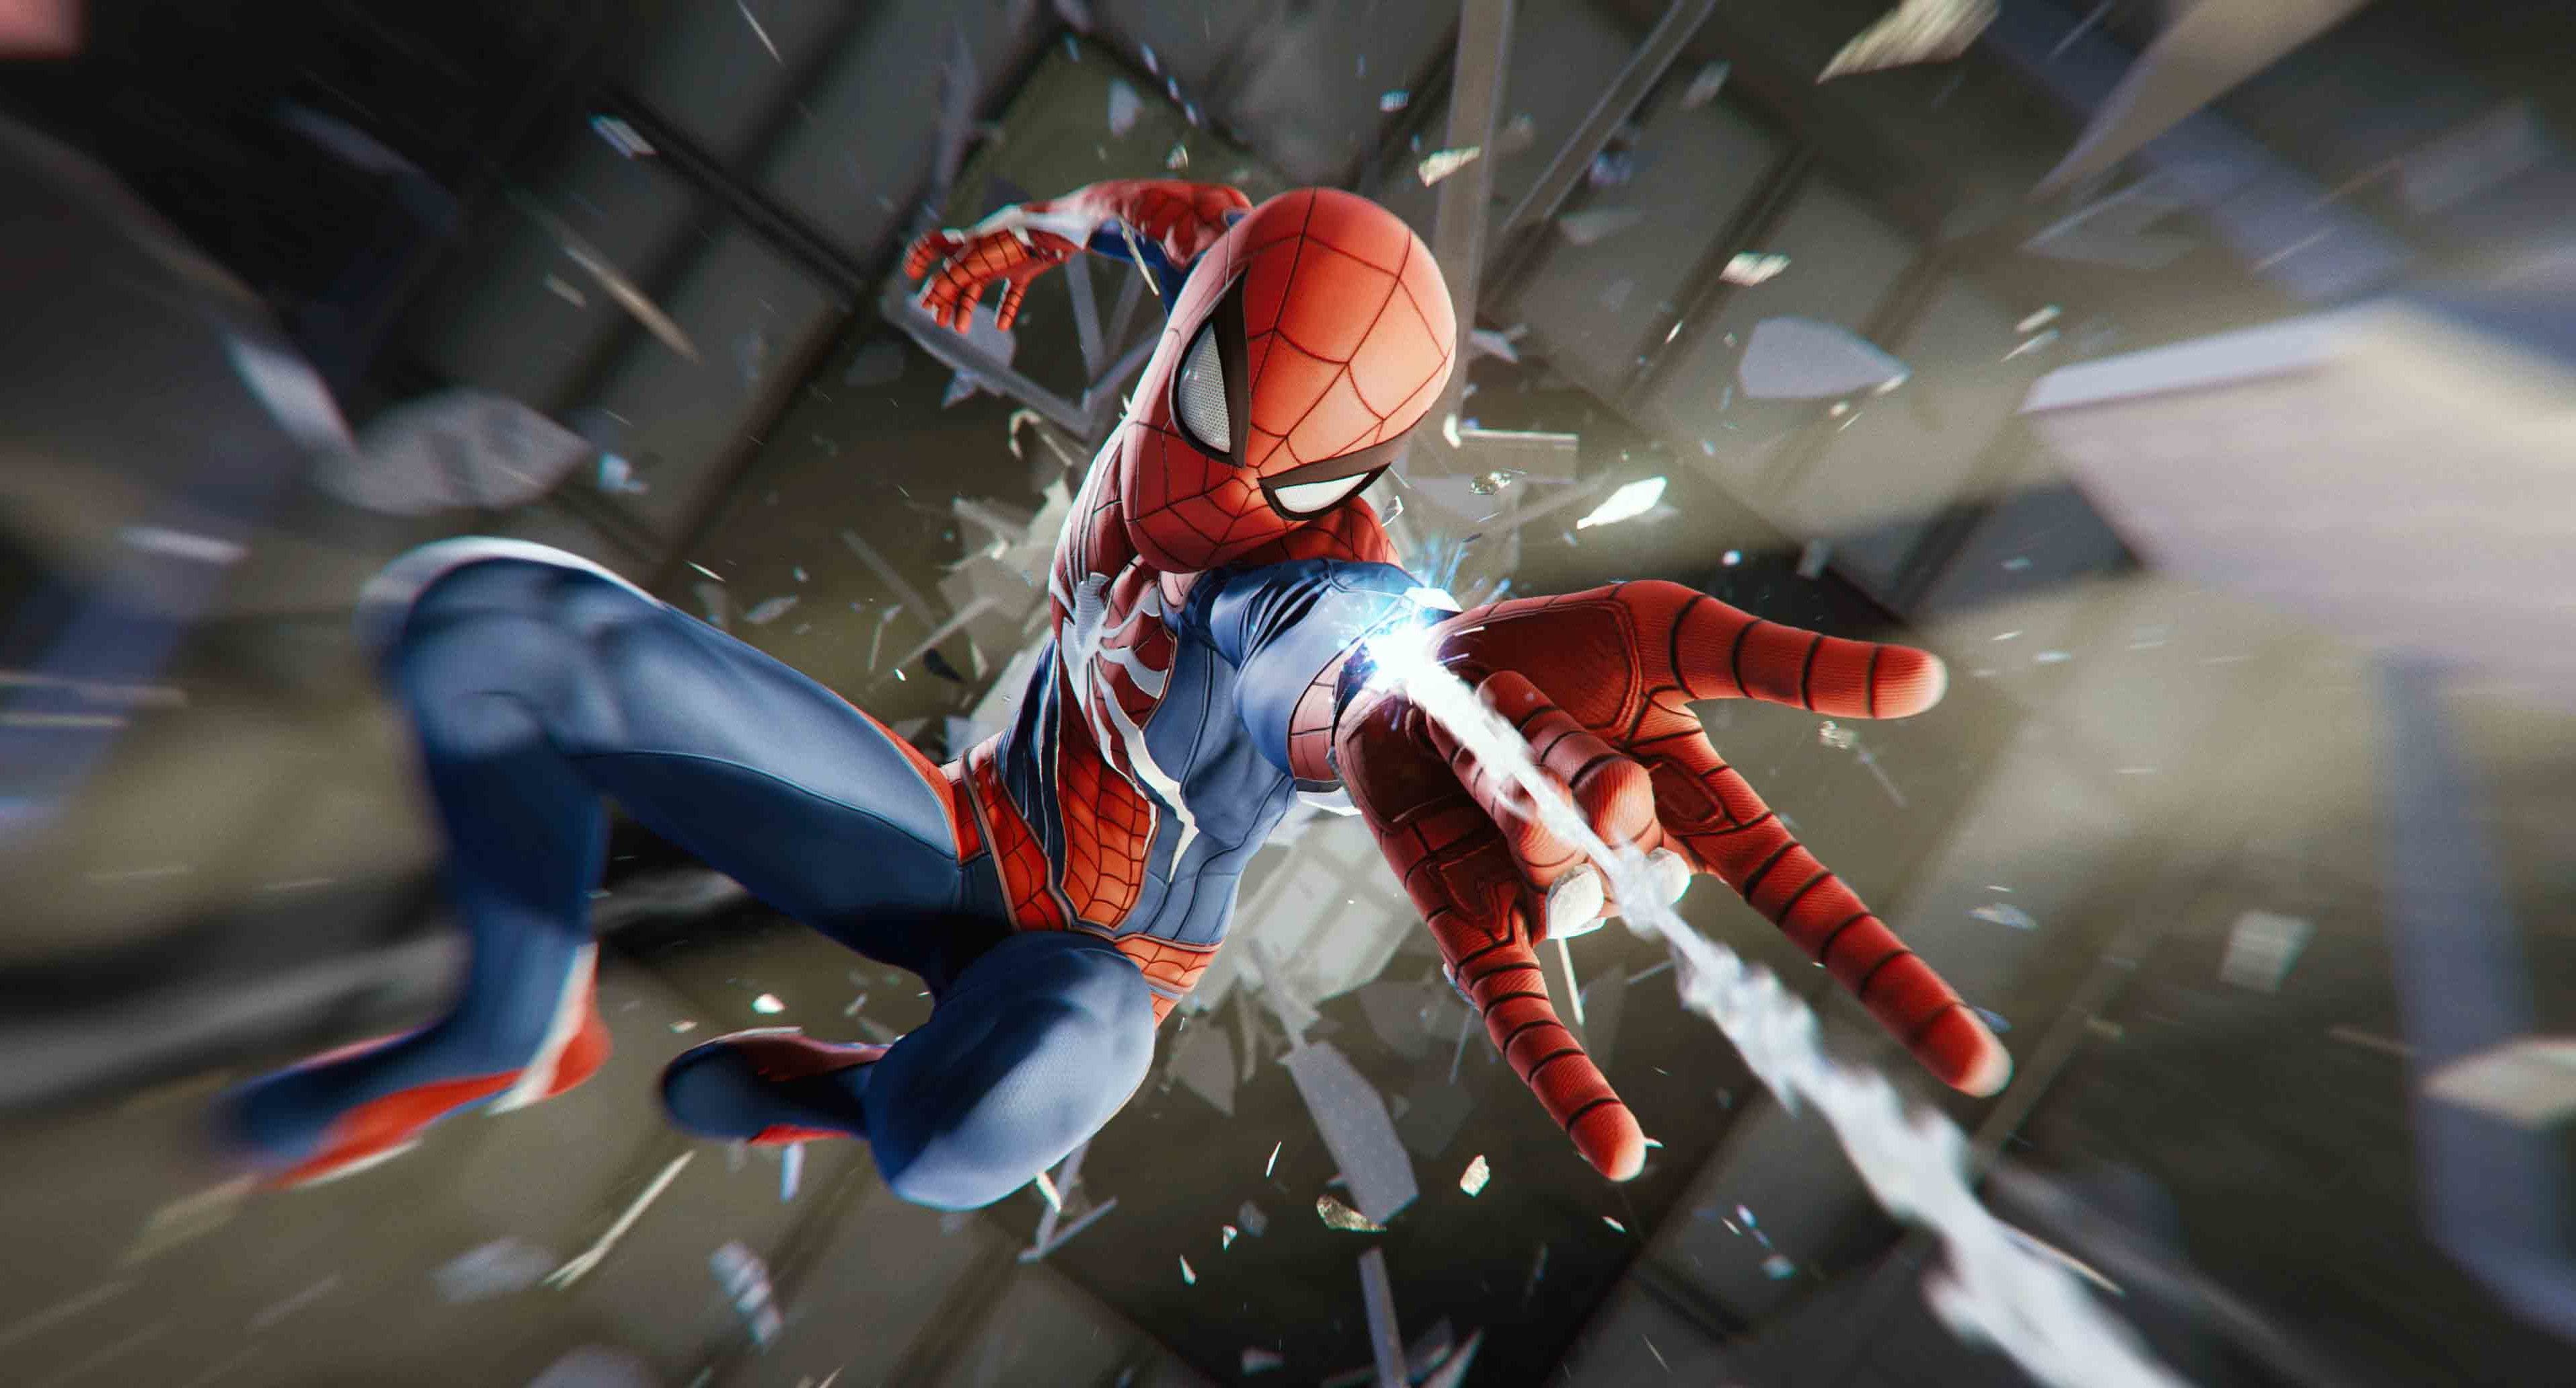 El acierto de Spiderman PS4 - El Ingenio